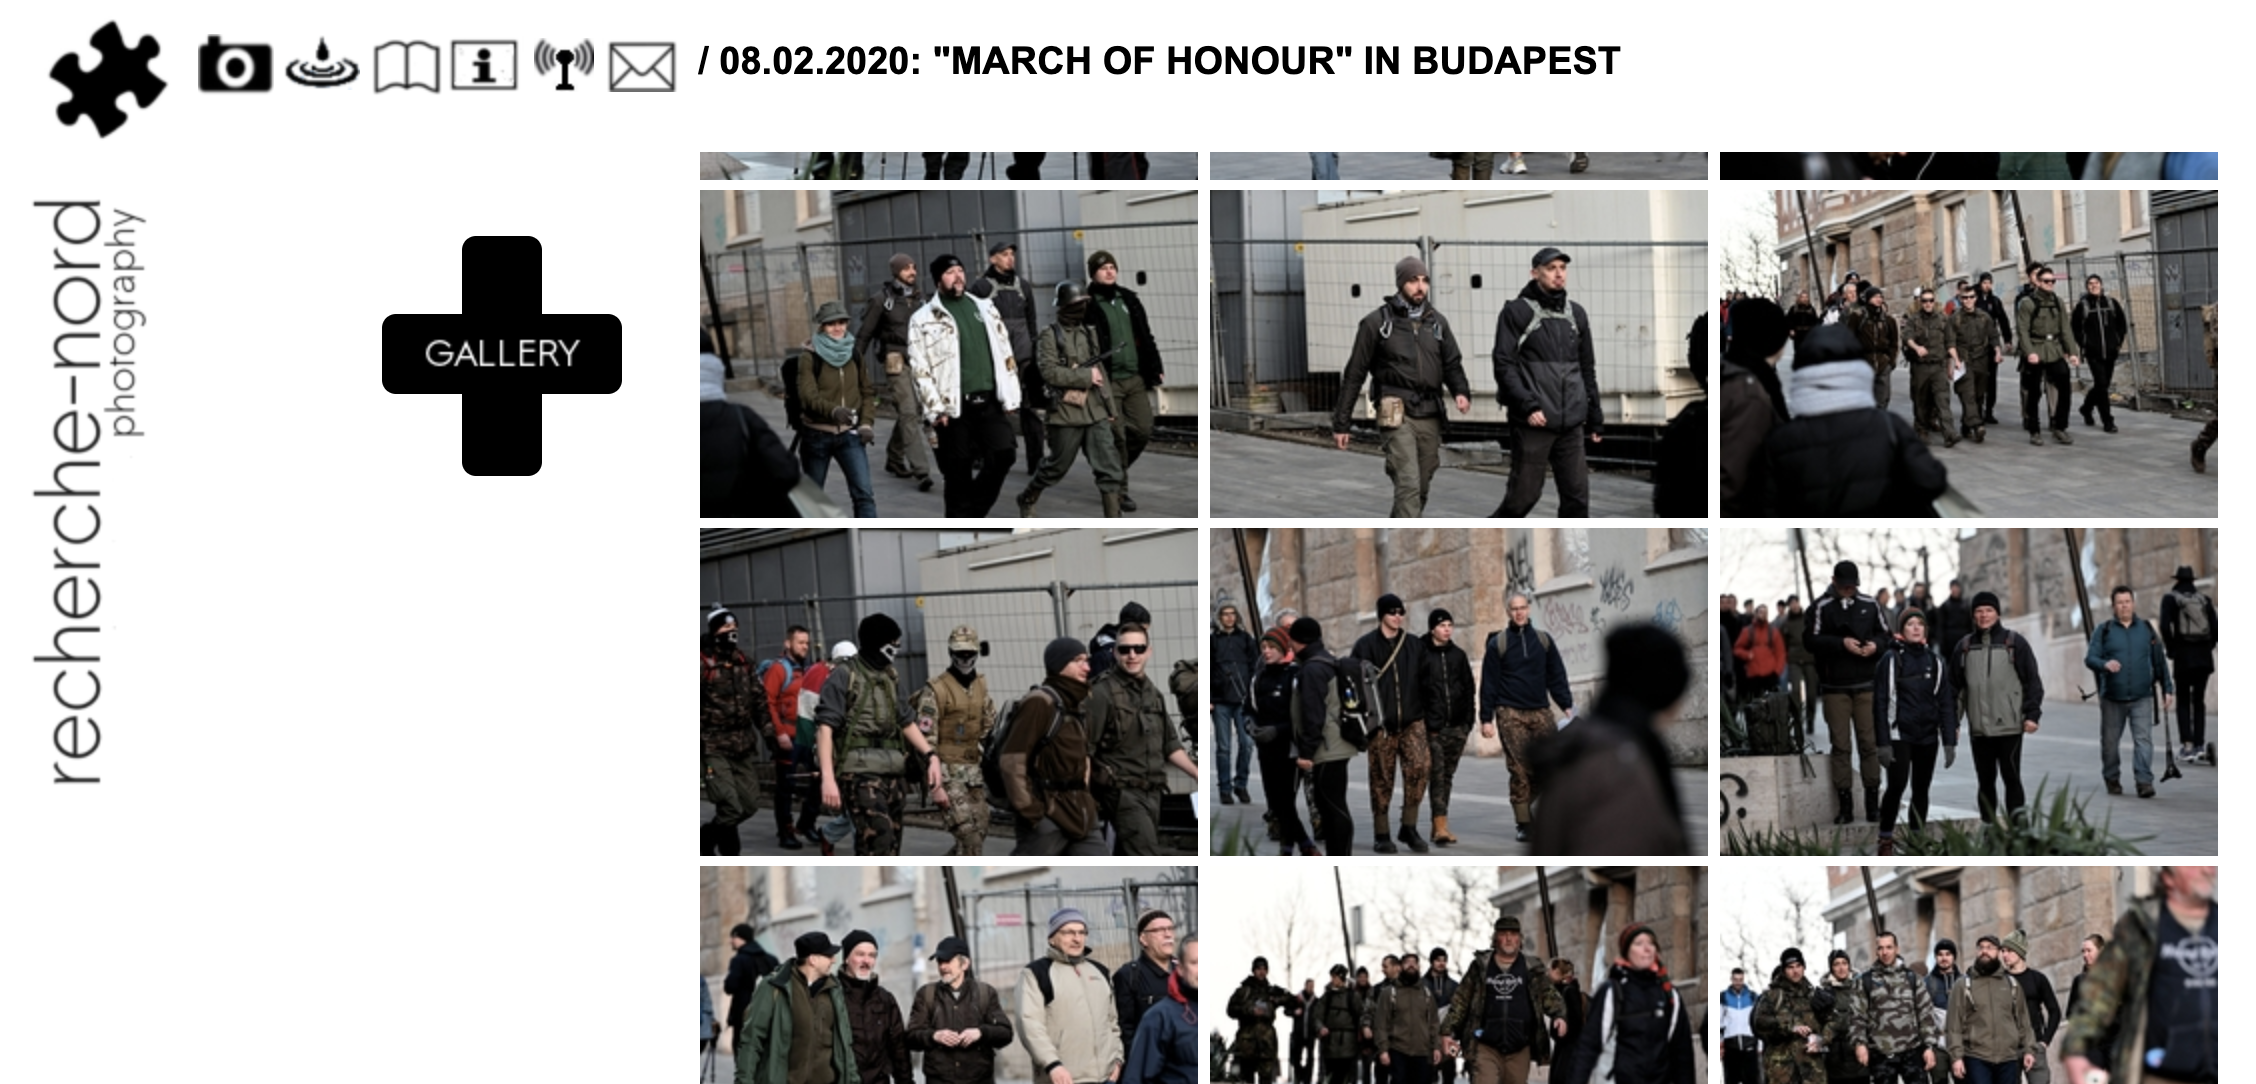 recherche-nord Fotogalerie Budapest 8./9.2020 belegt österreichische Beteiligung (Screenshot)